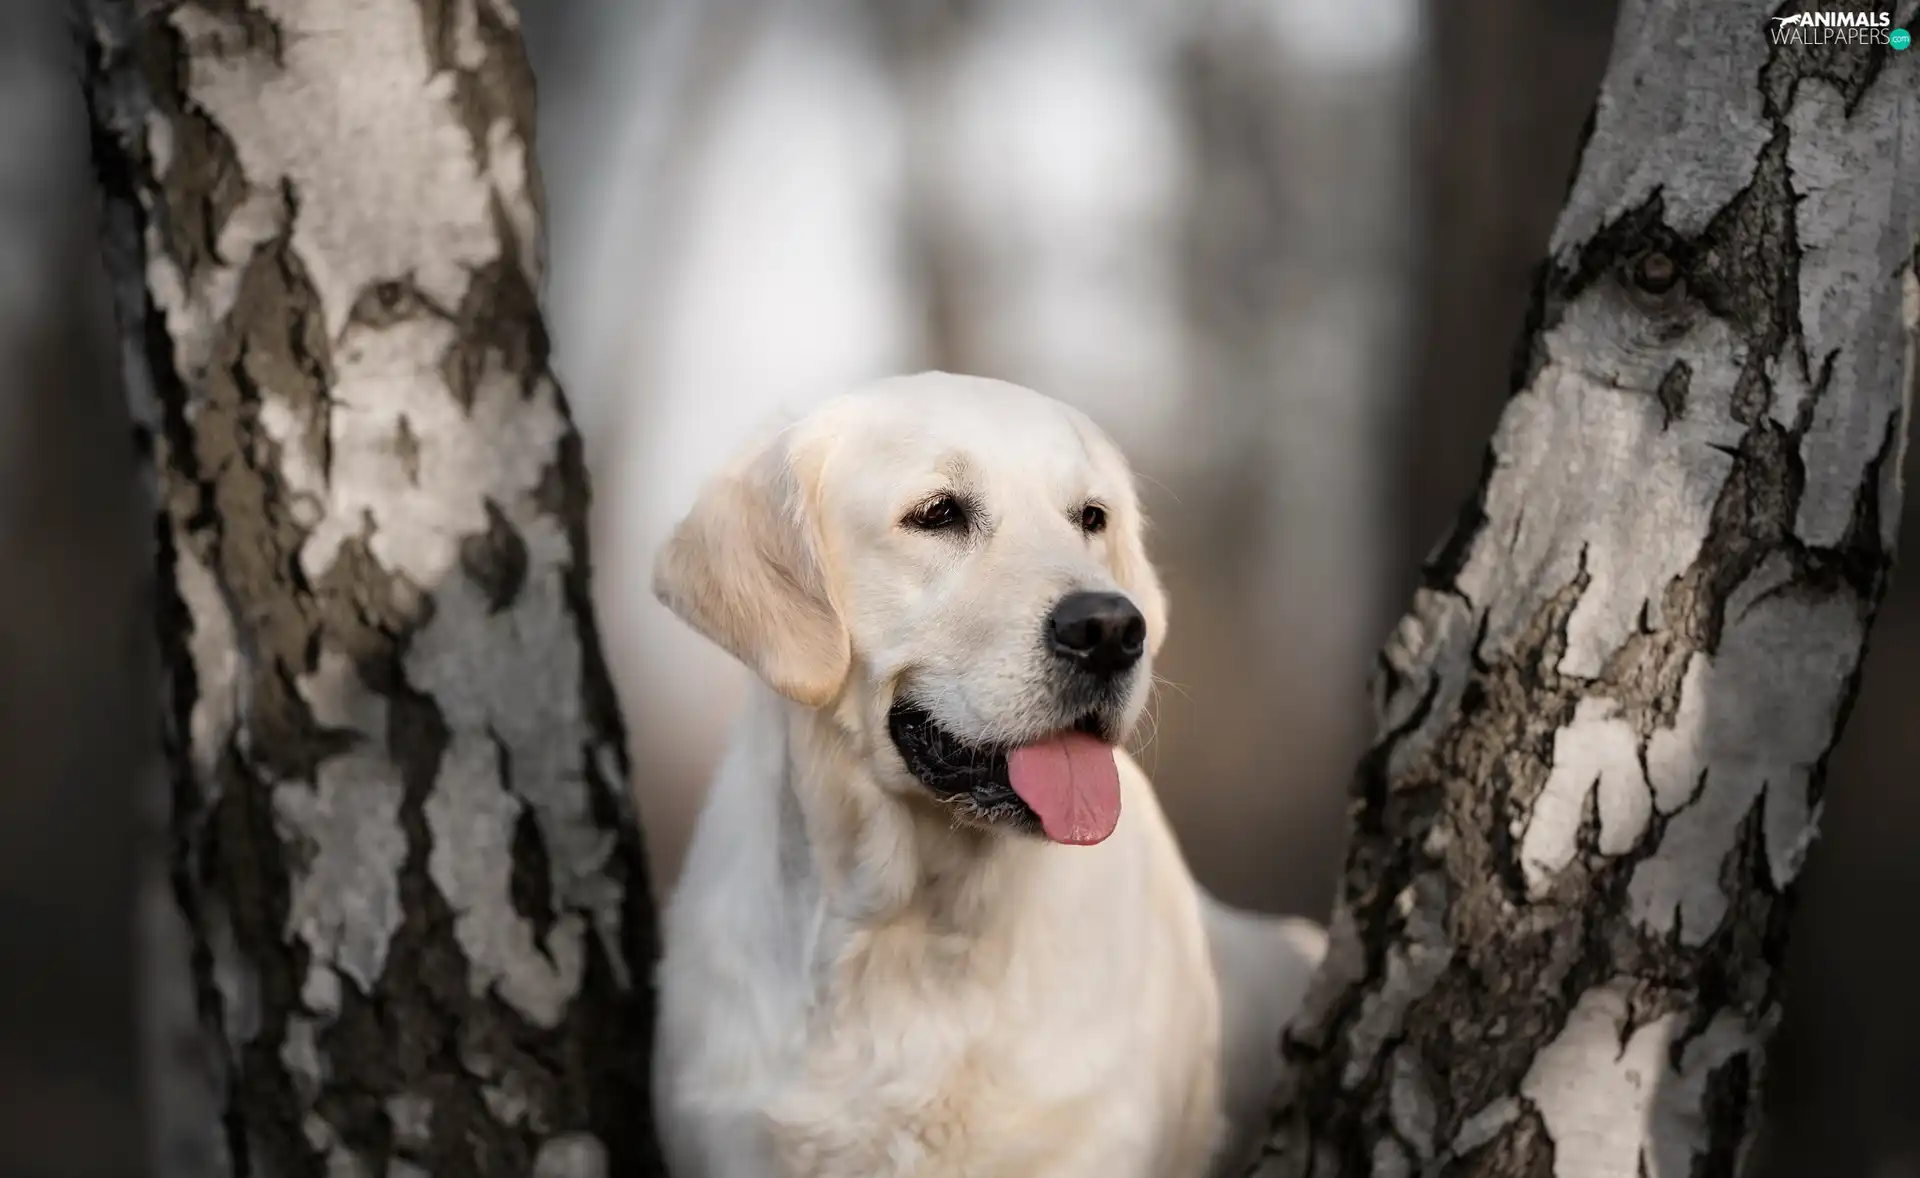 Stems, dog, birch, blurry background, trees, Labrador Retriever